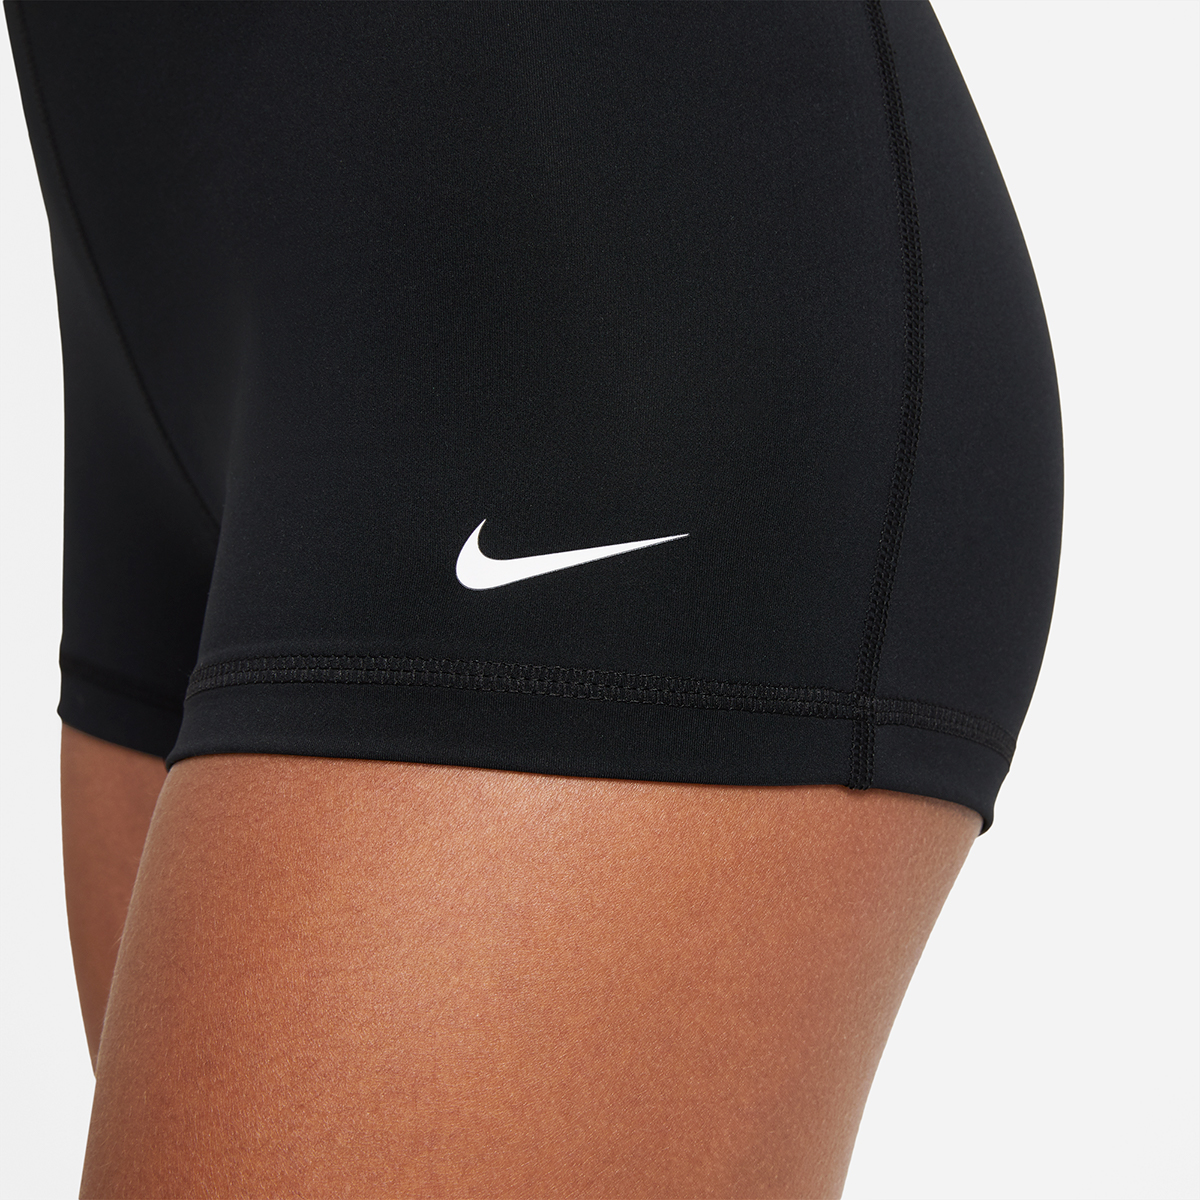 Nike Pro Short, , large image number null